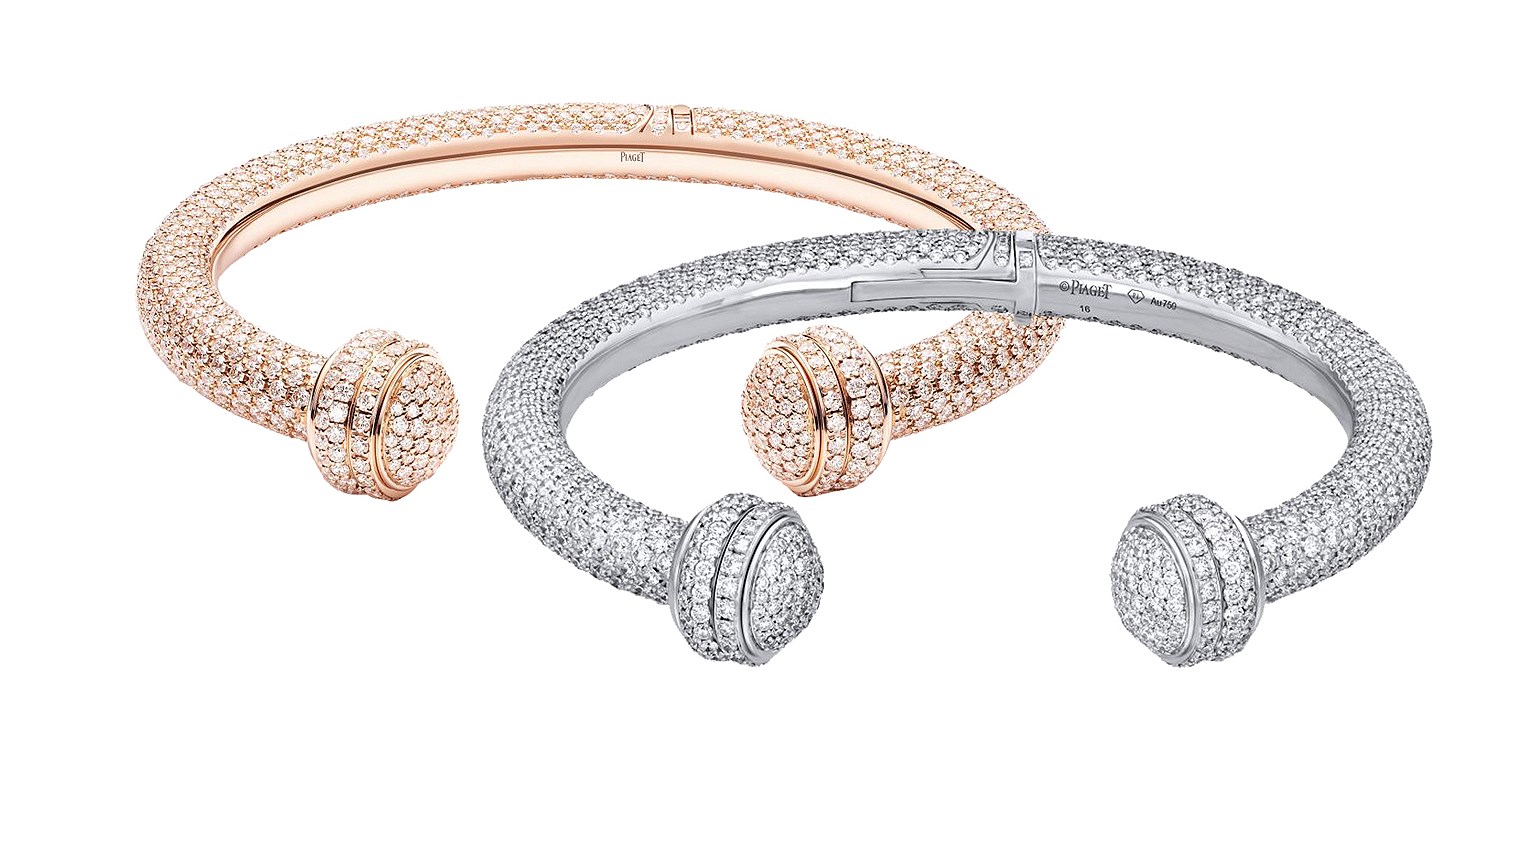 Piaget, браслеты Possession, белое и розовое золото, бриллианты